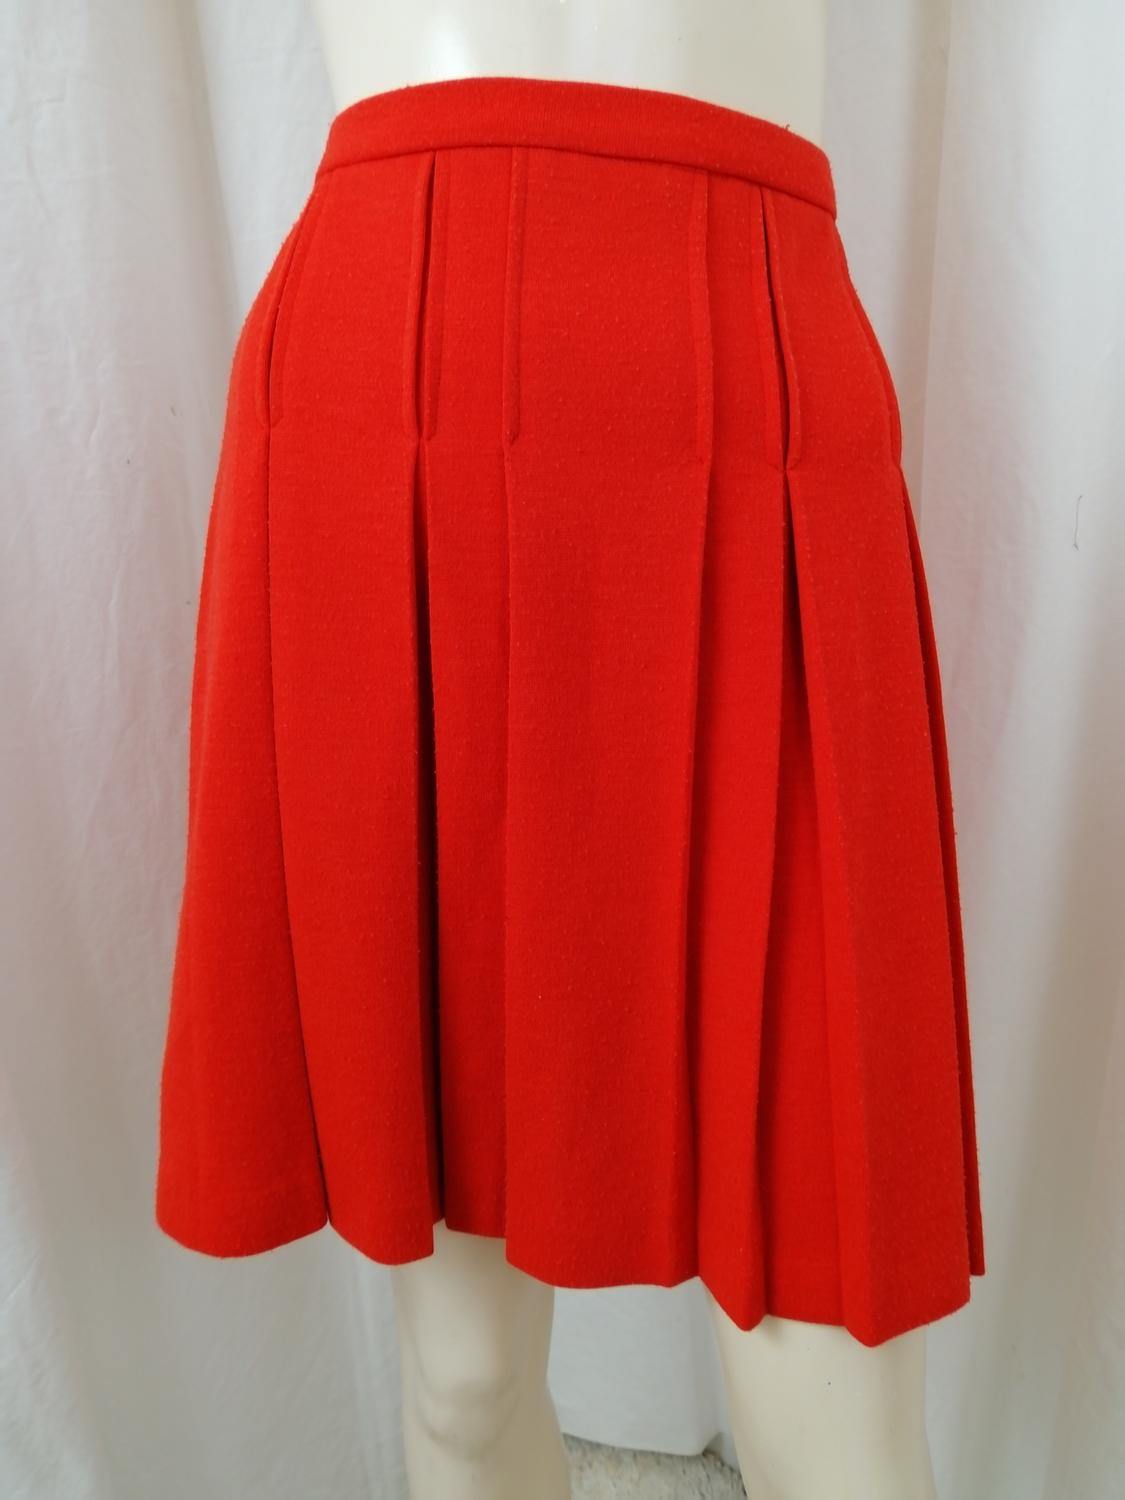 Vintage Retro klarröd kjol med veck kort 6070-tal